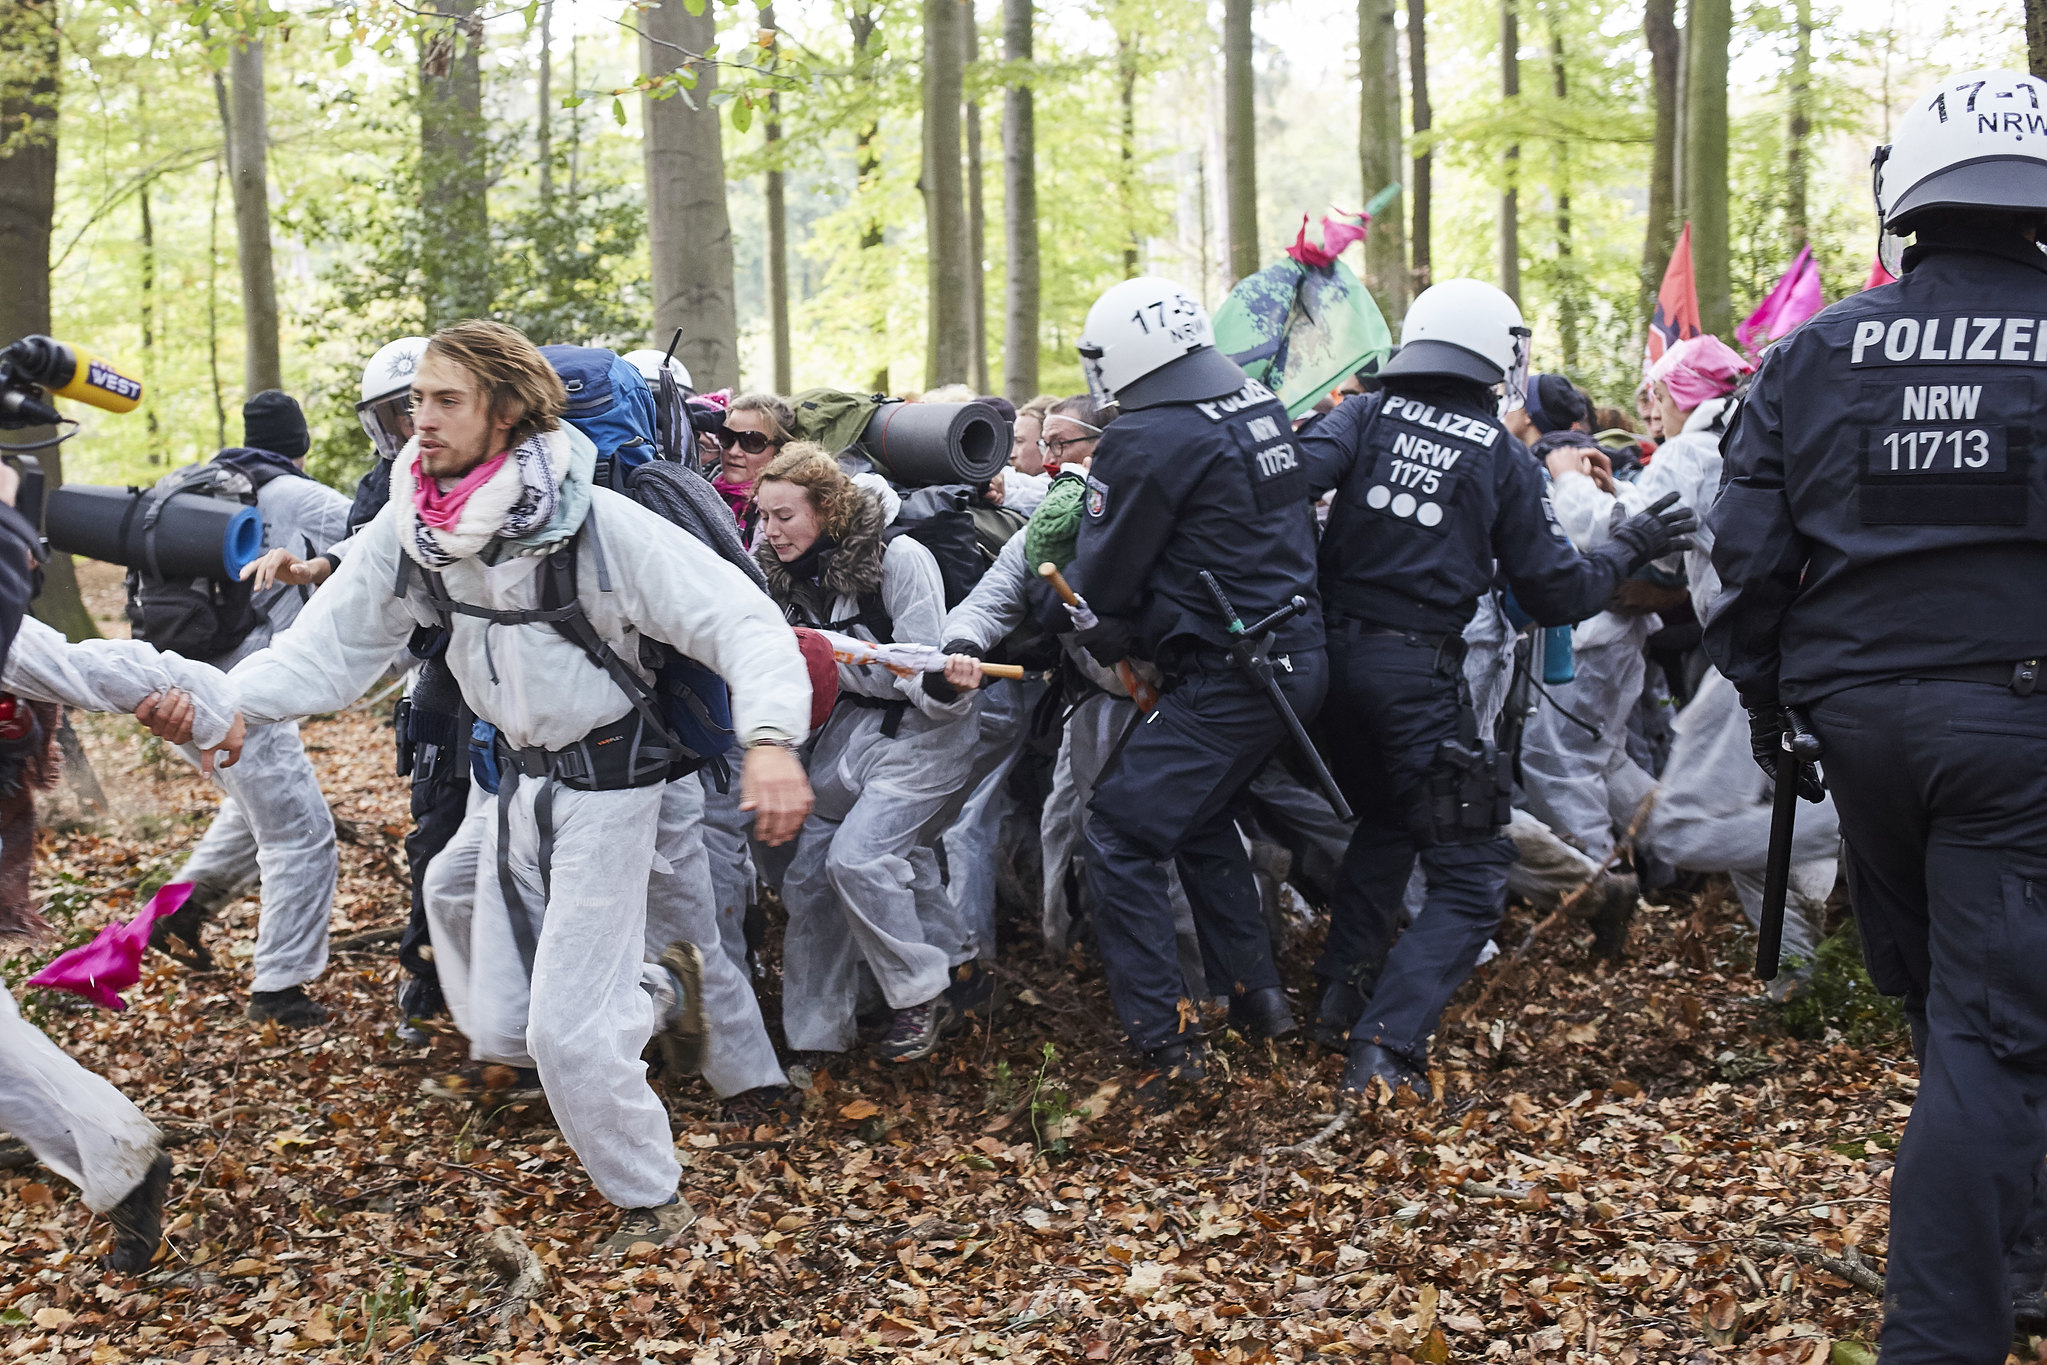 Lorsqu'ils dévient du trajet autorisé de la manifestation pour rejoindre la forêt de Hambach, les activistes sont coursés par les forces de l'ordre. Image : Ende Gelände, Flickr